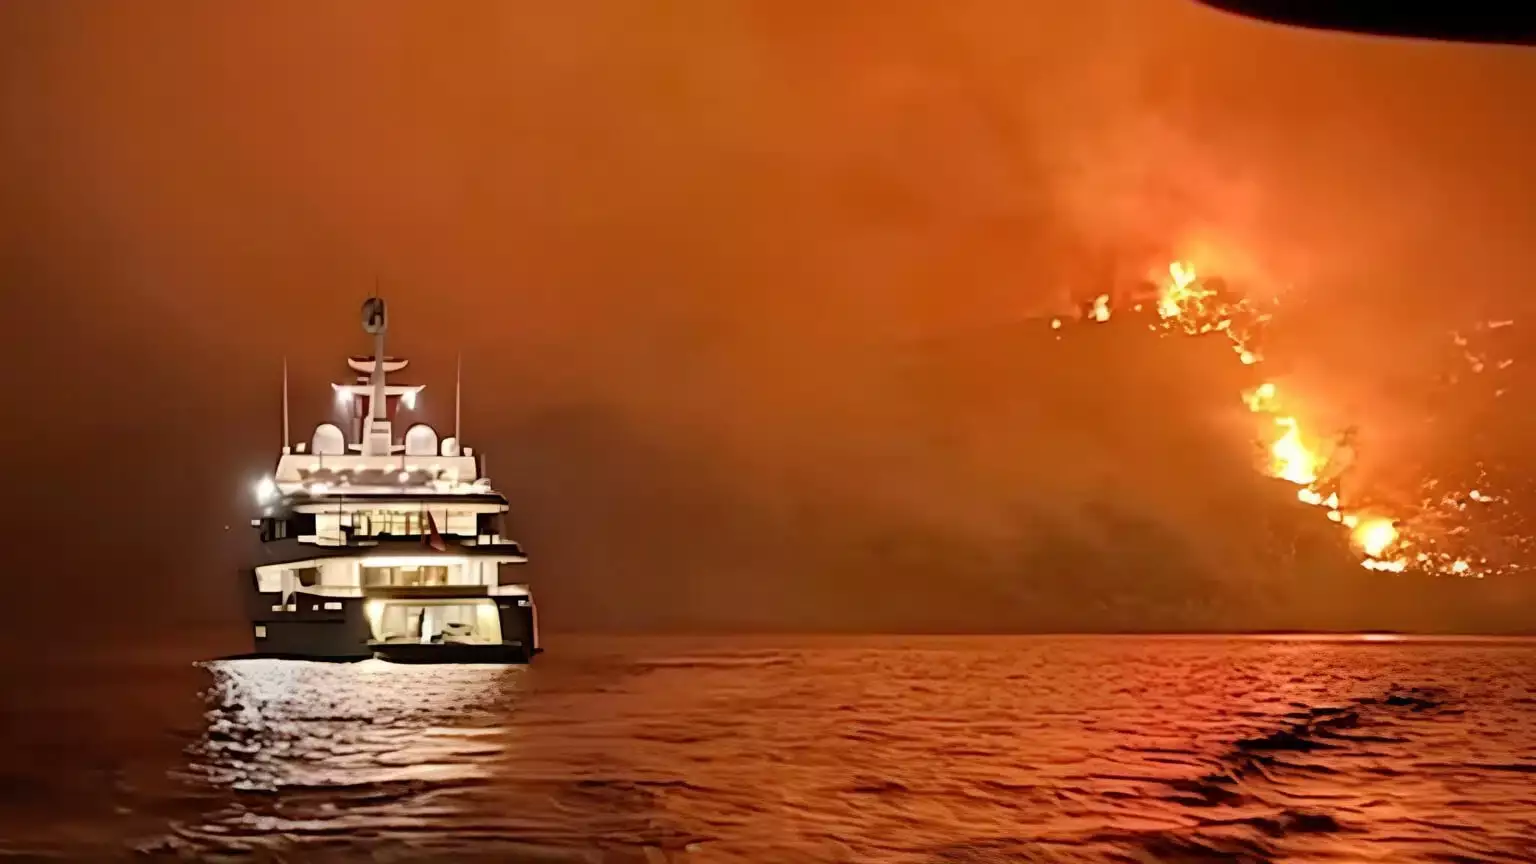 Пассажирами яхты, устроившими пожар на греческом острове, могли быть известные казахстанцы